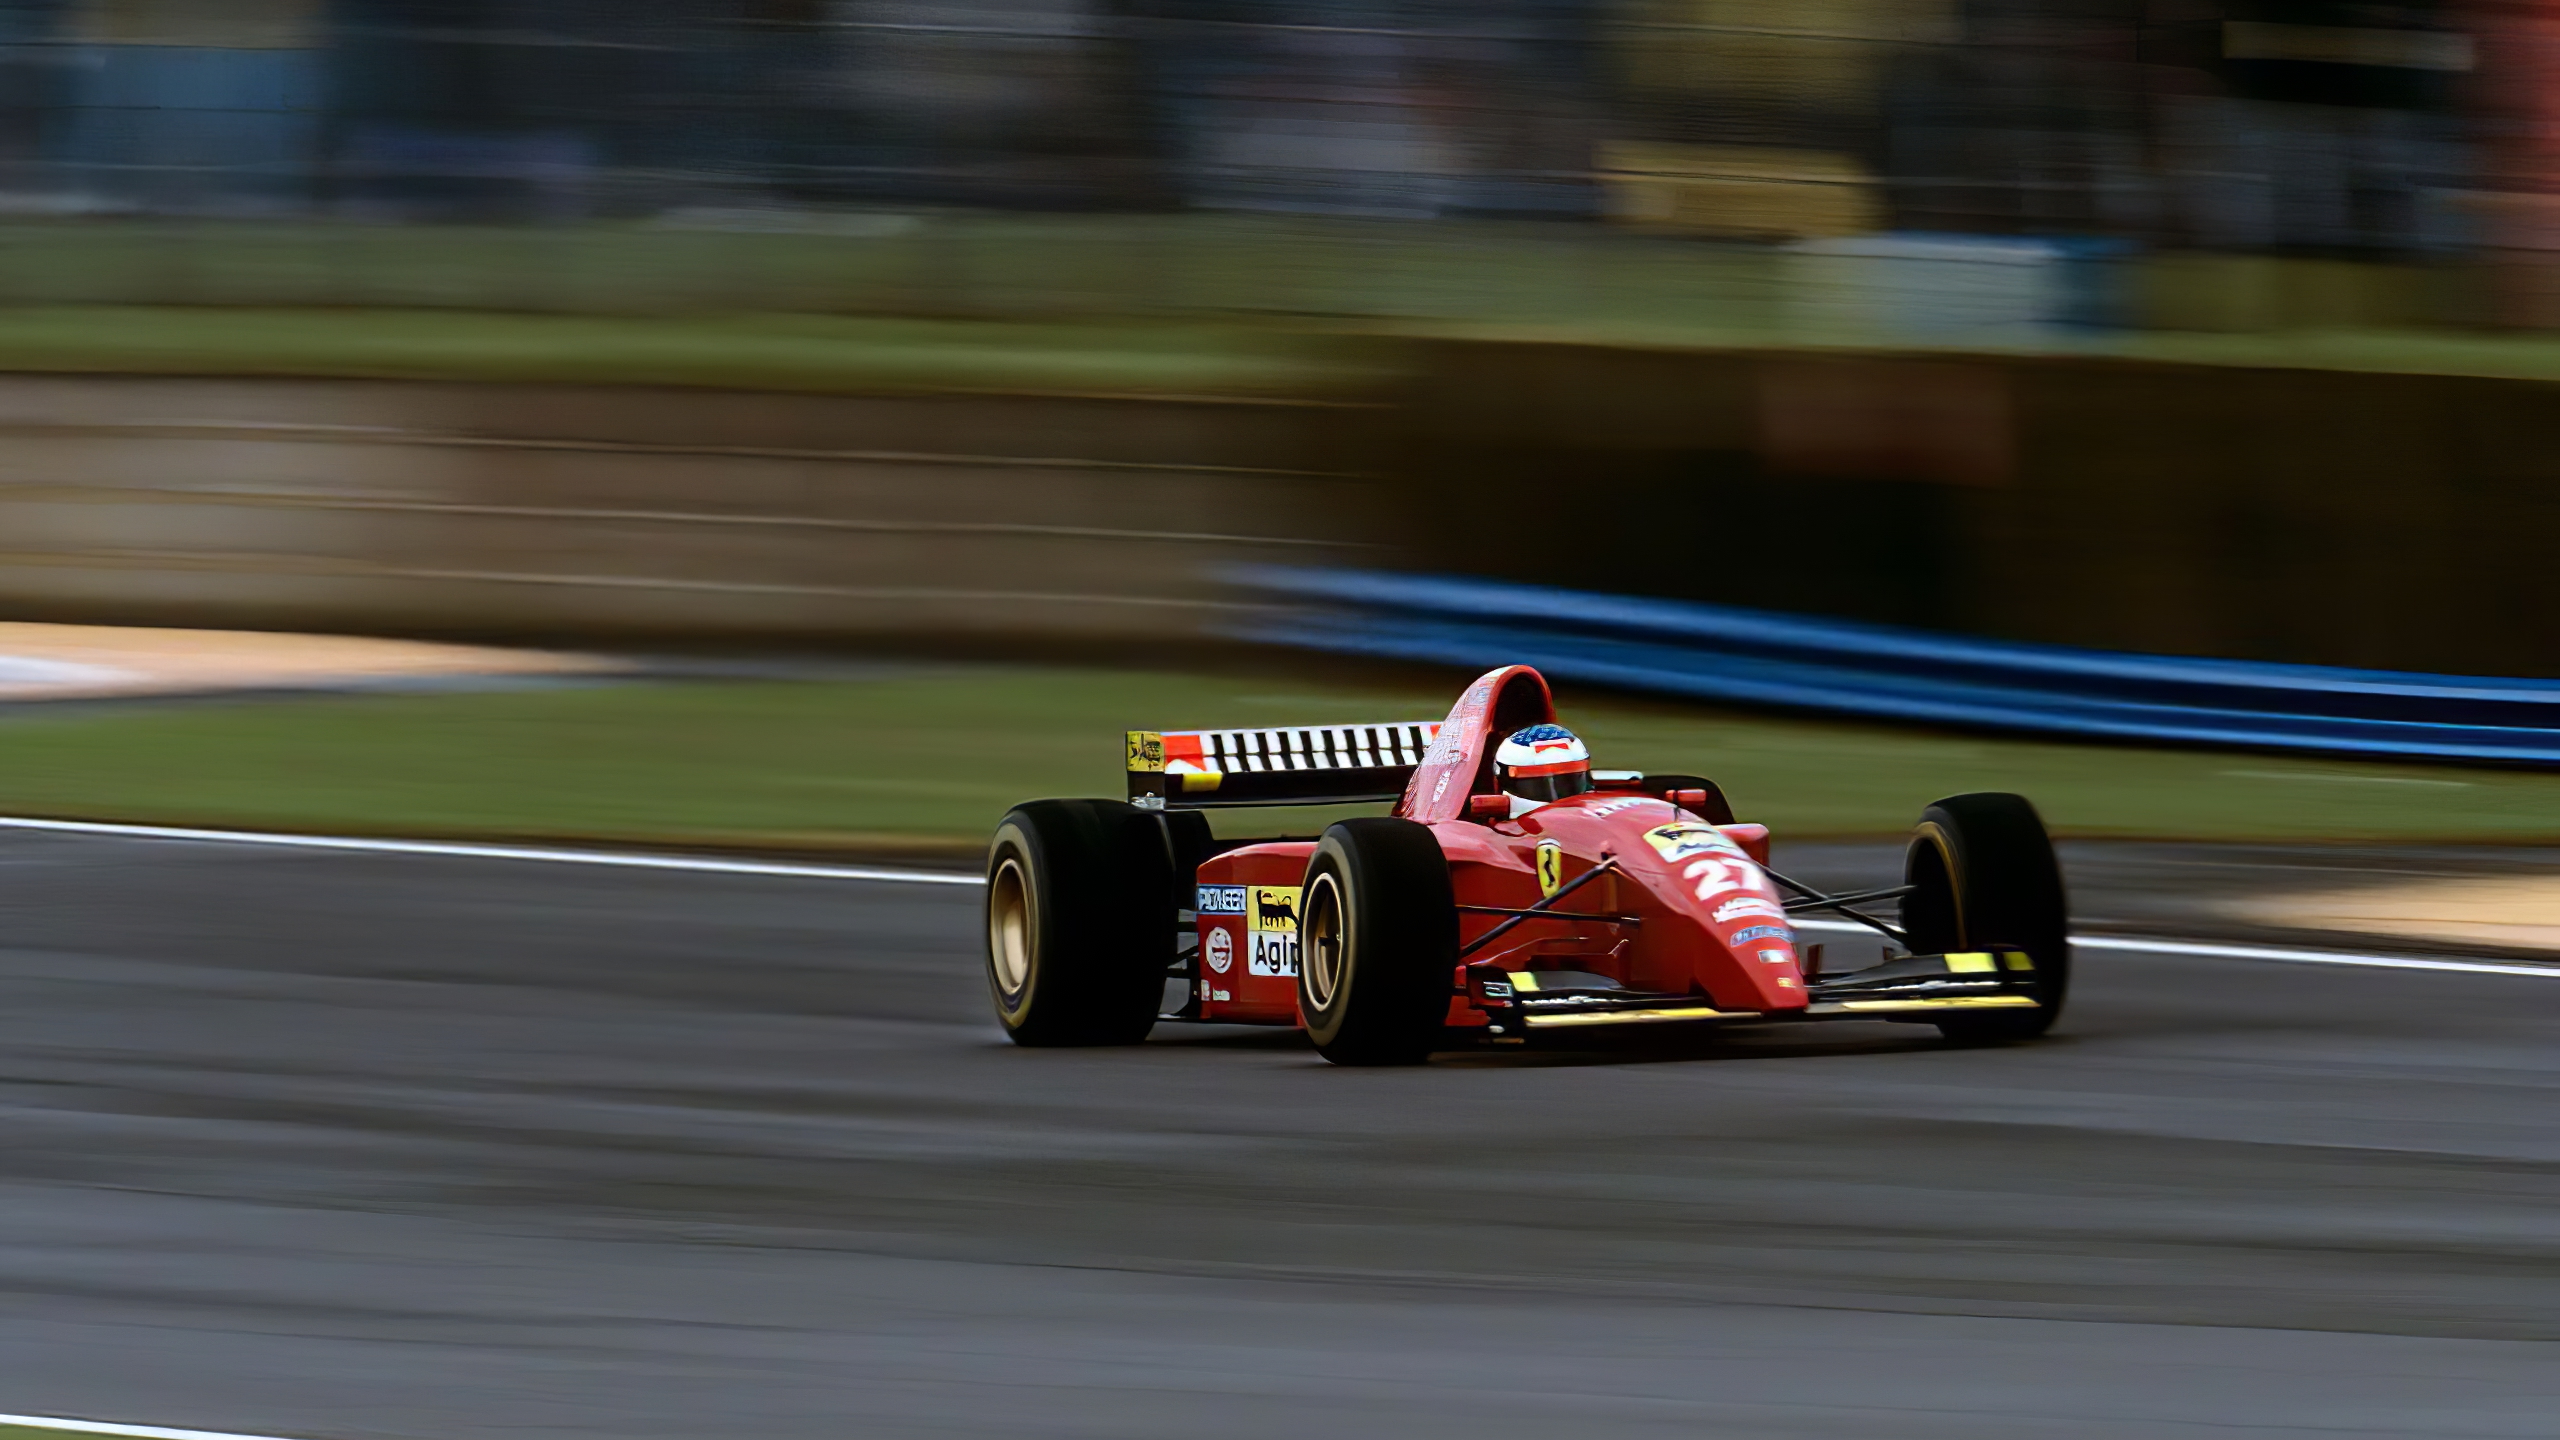 General 2560x1440 Ferrari Formula 1 race cars racing